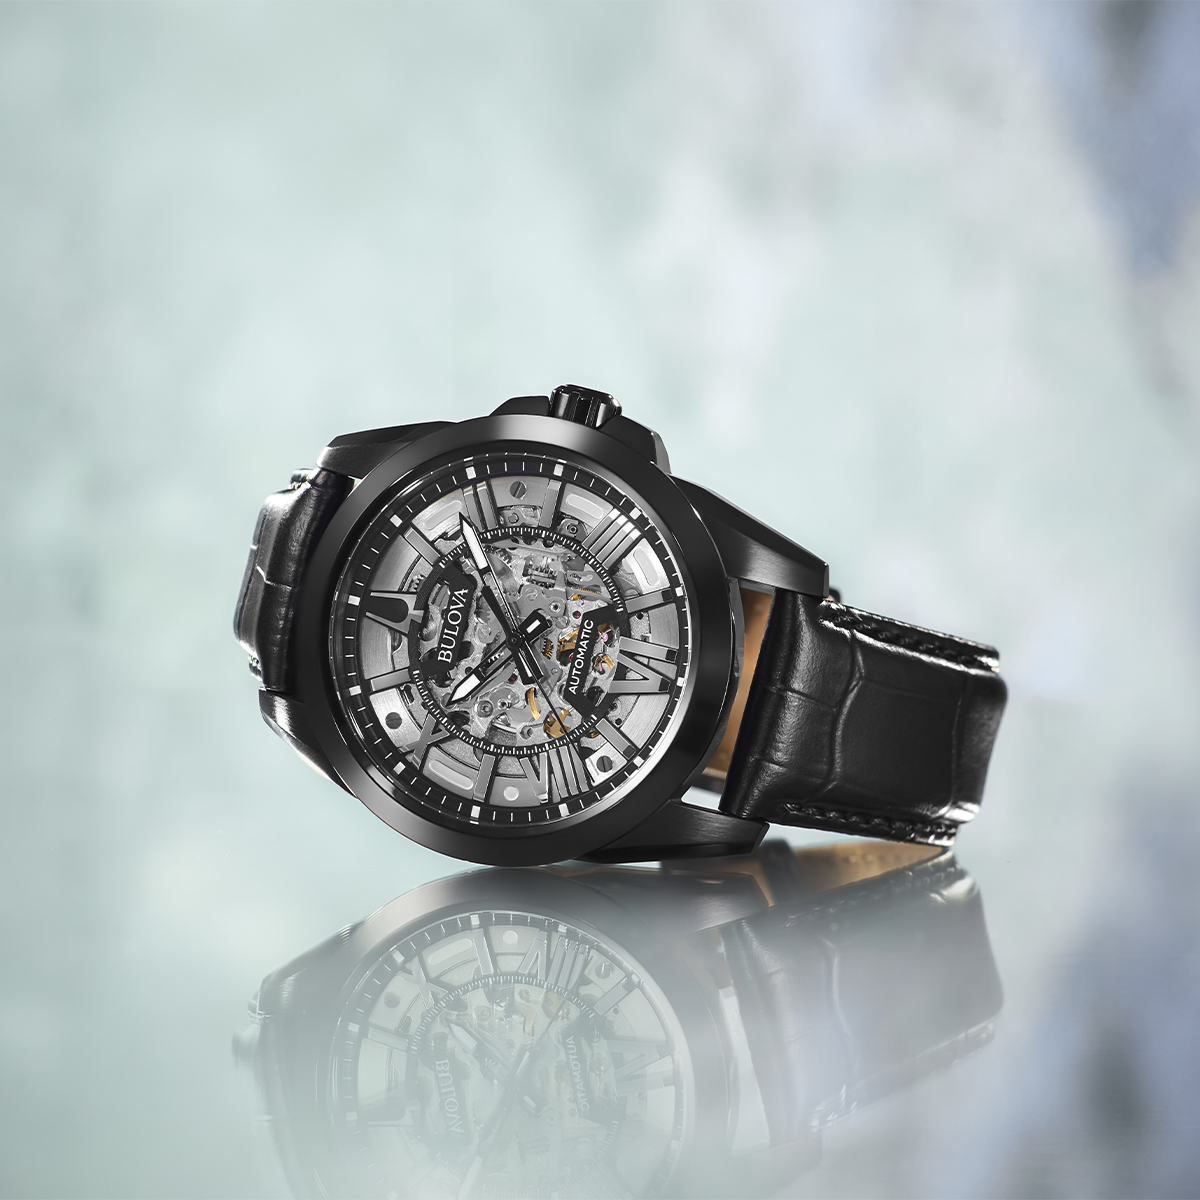 BULOVA オートマチック ブラック スケルトン時計 - 腕時計(アナログ)